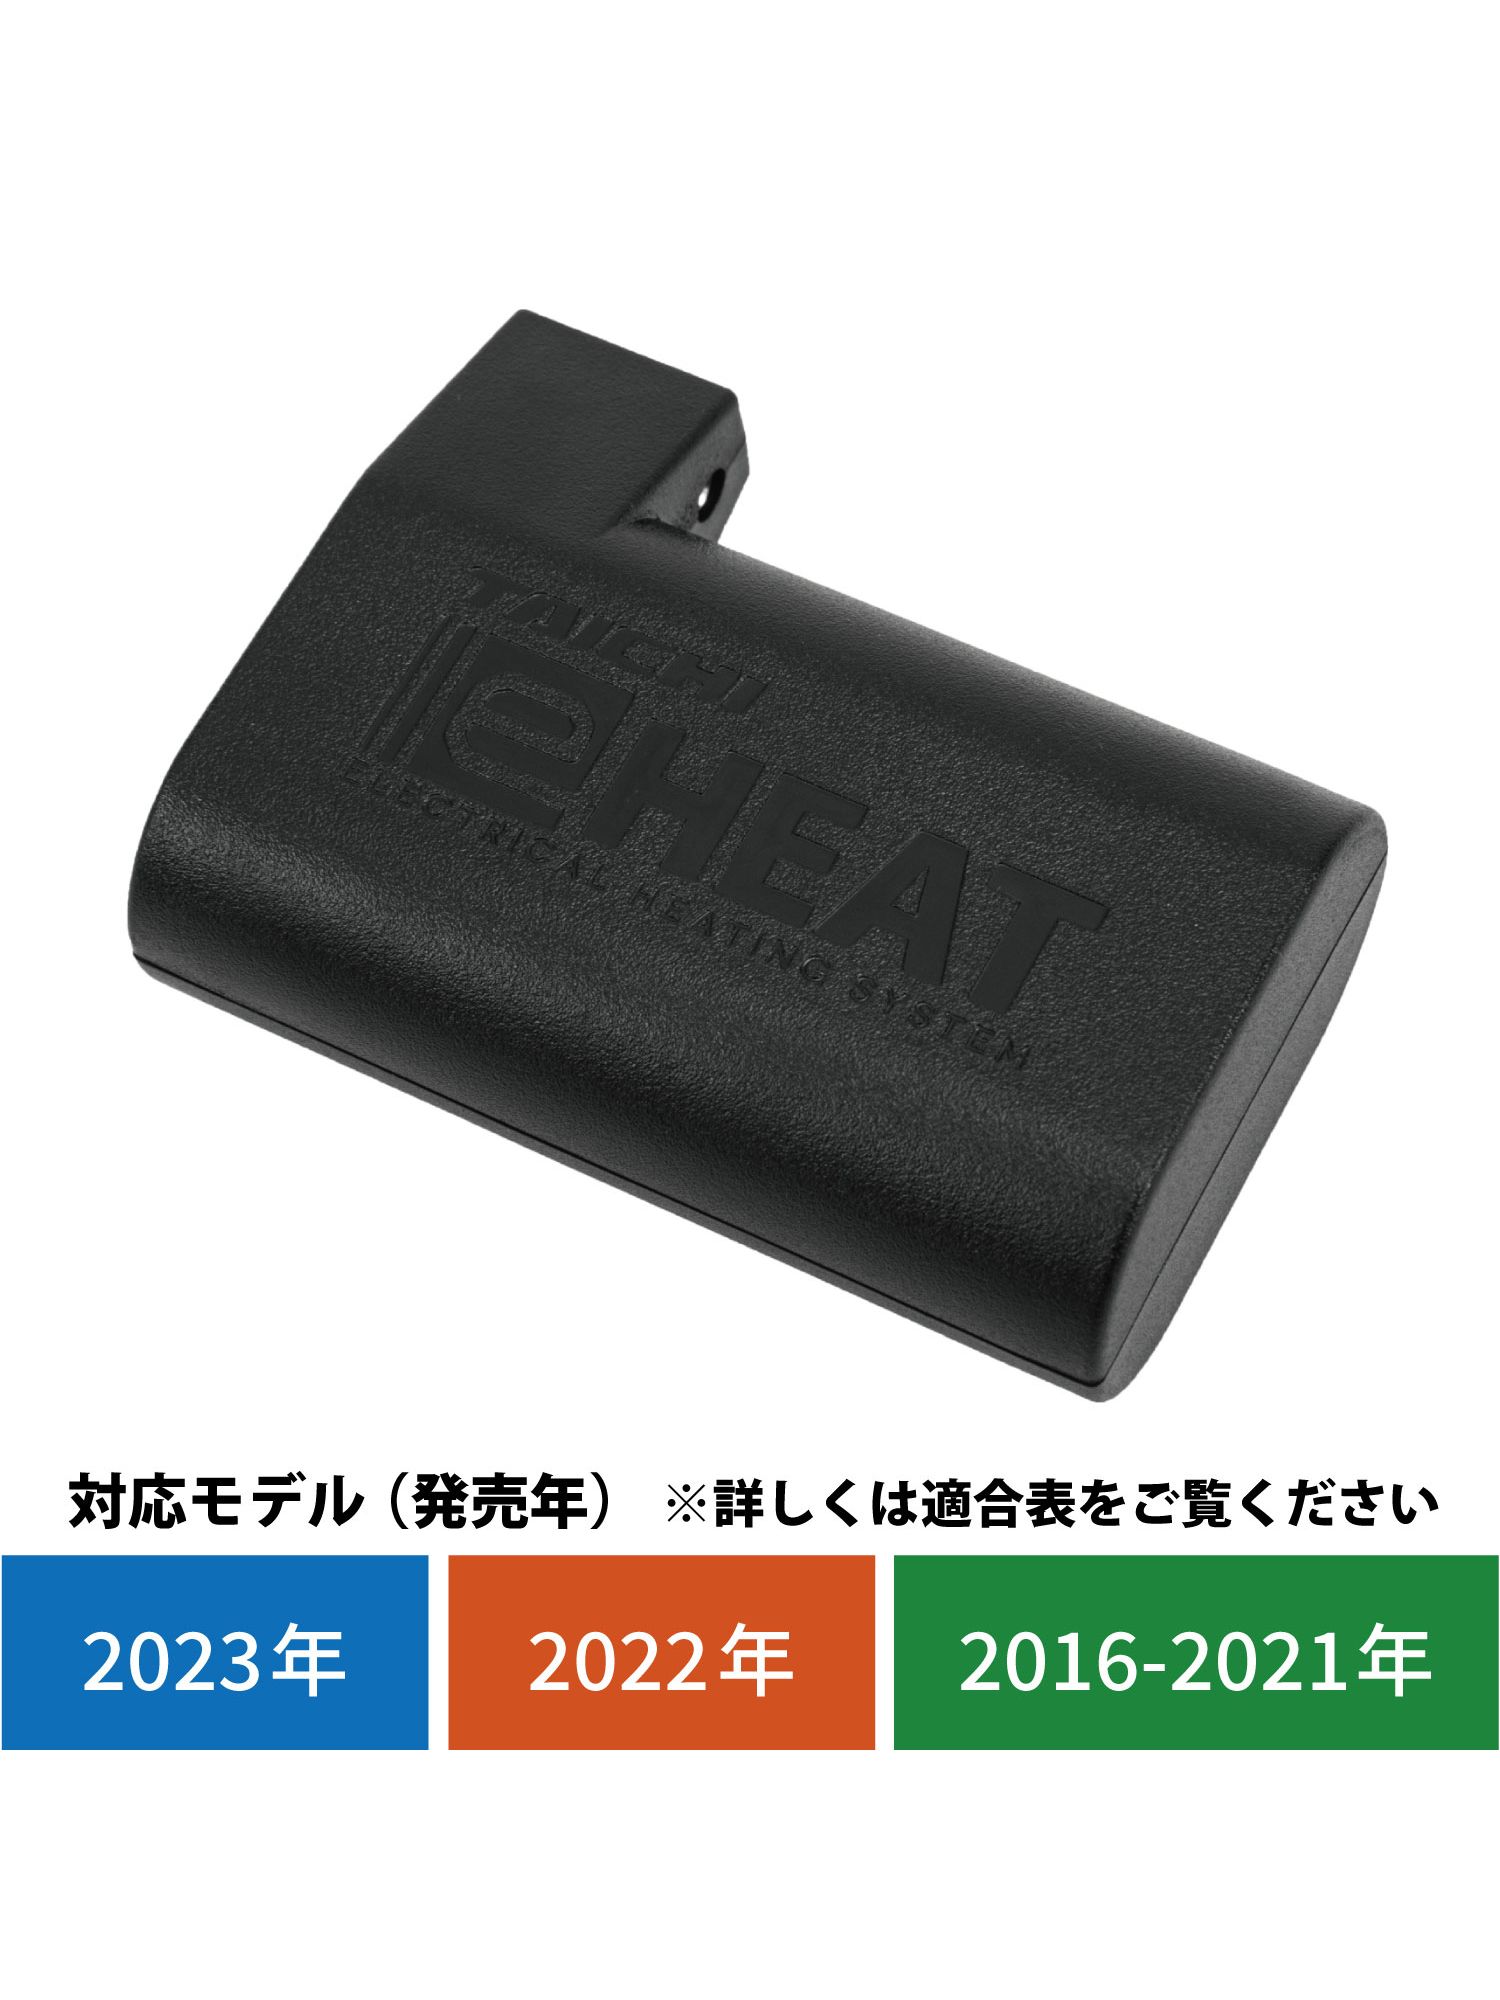 タイチ公式通販】RSP065 e-HEAT 7.2V専用バッテリー:1個 TAICHI